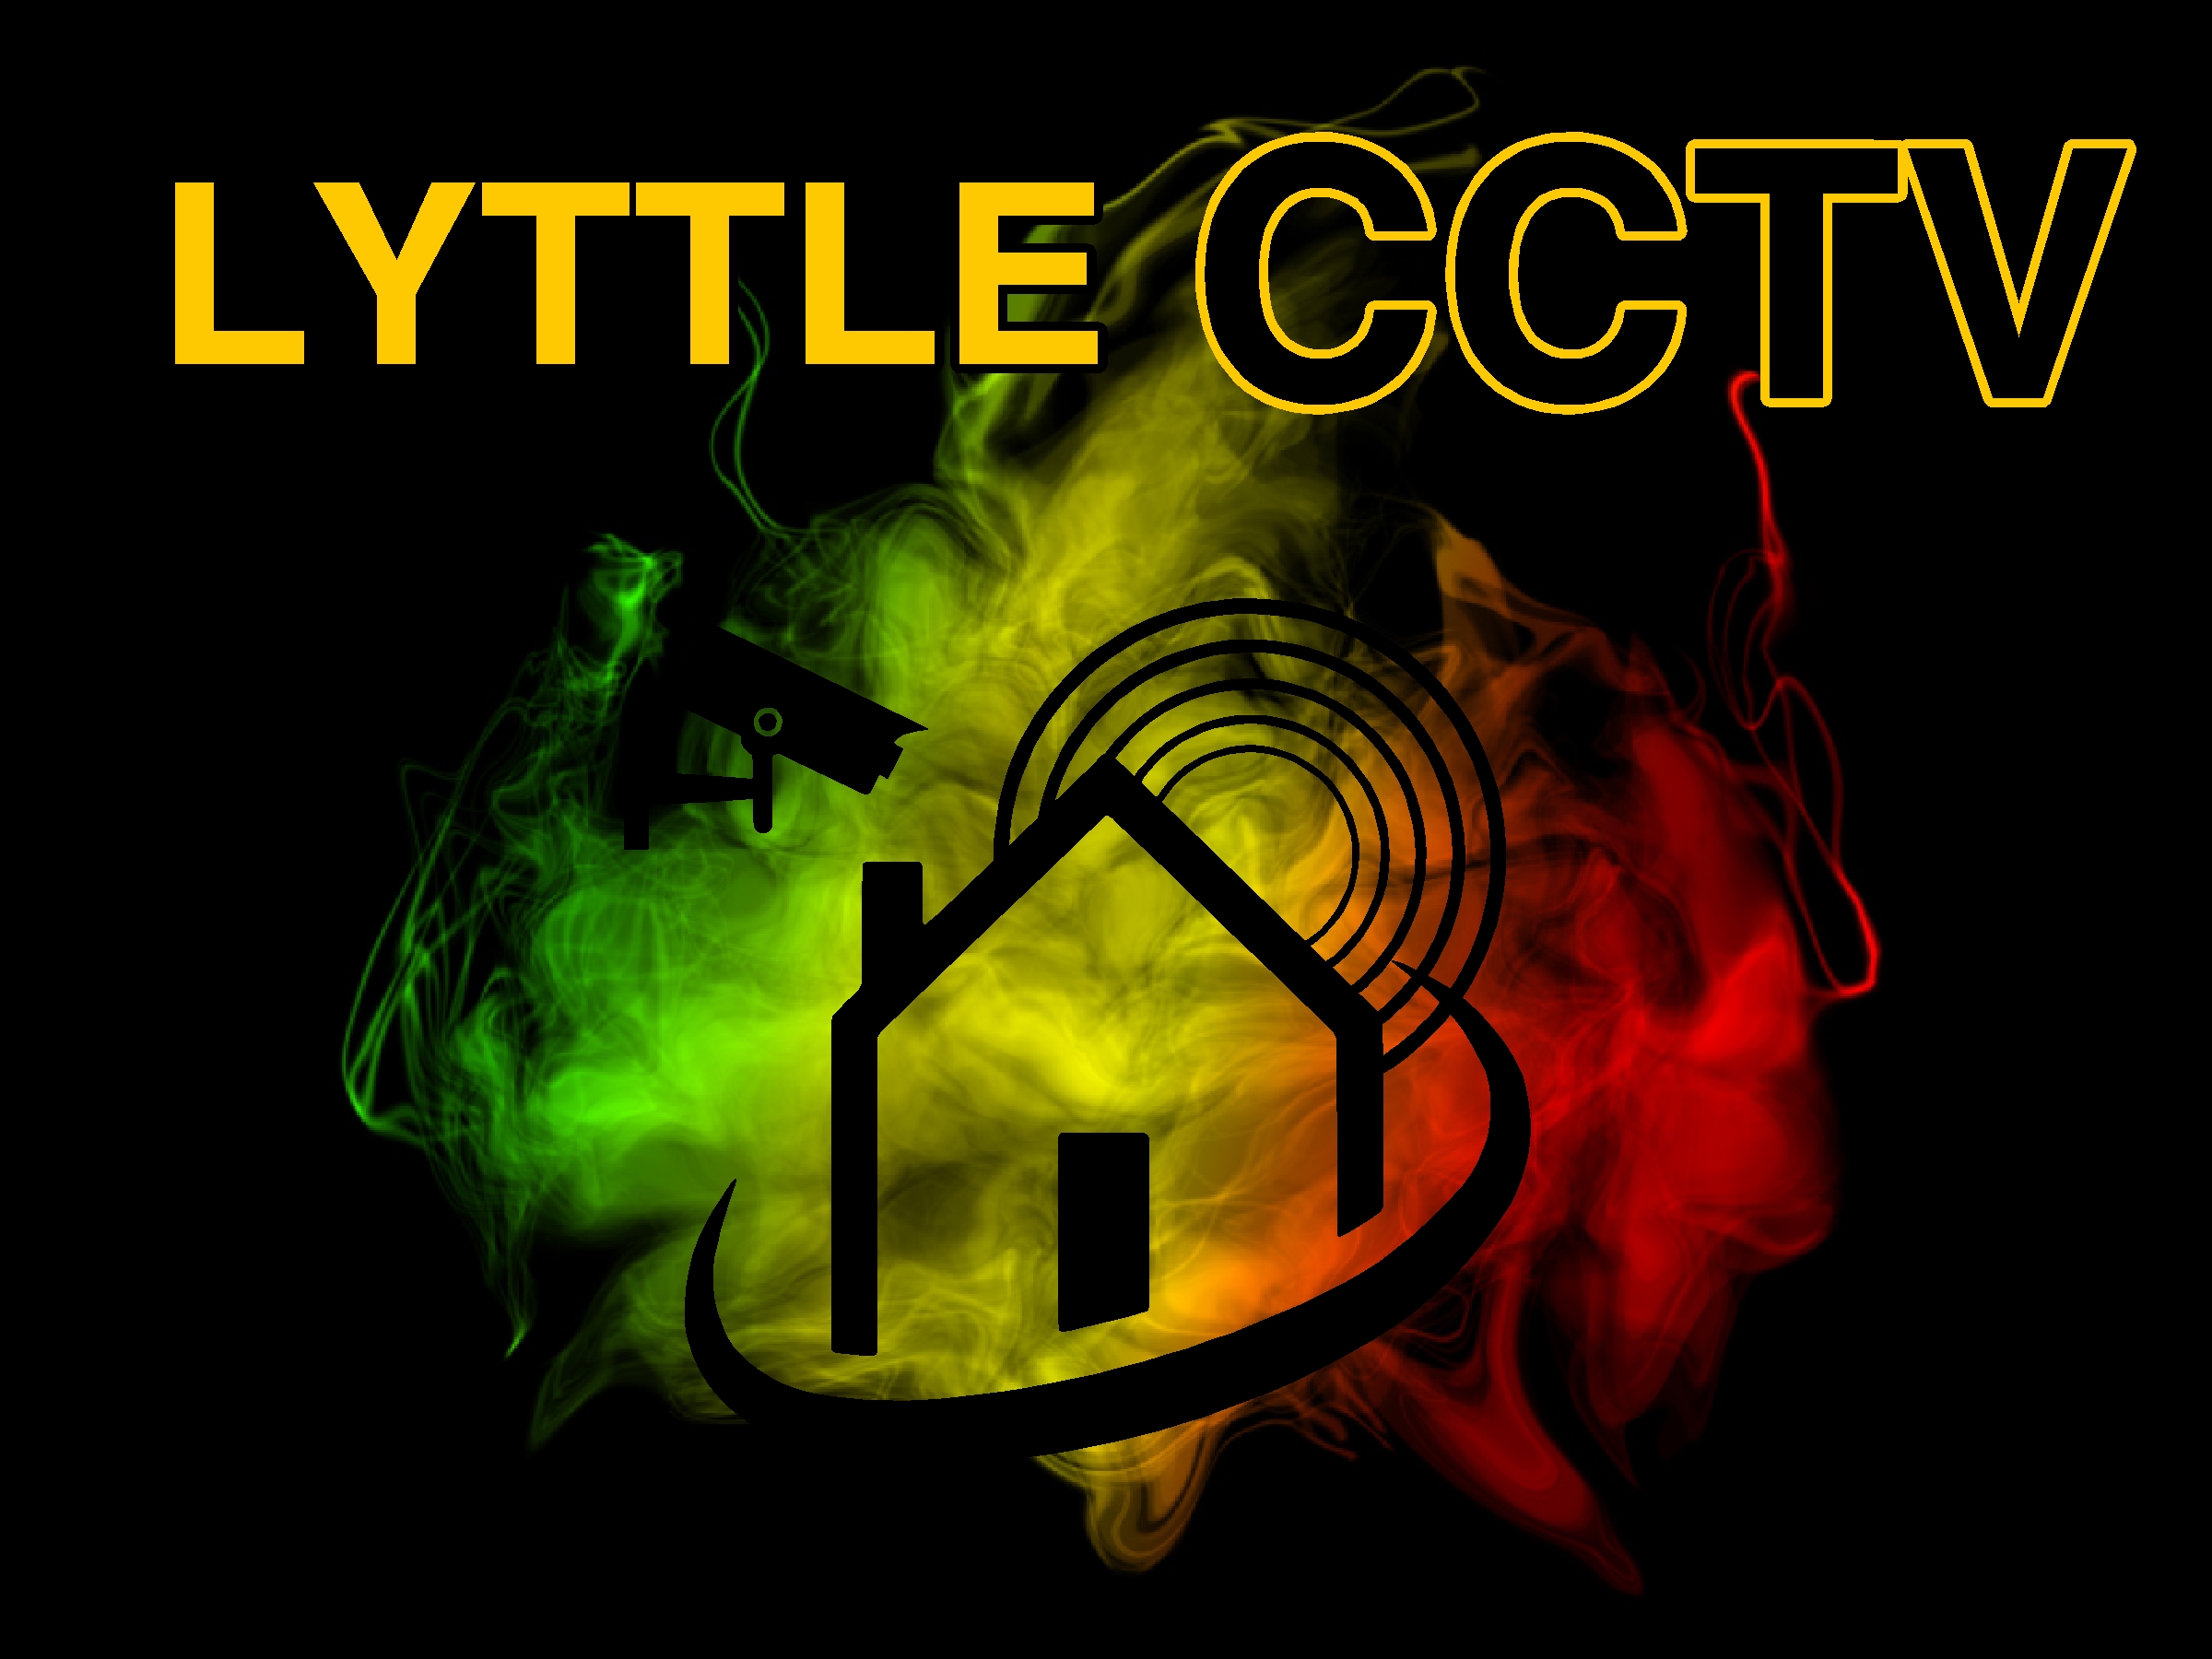 LyttleCCTV